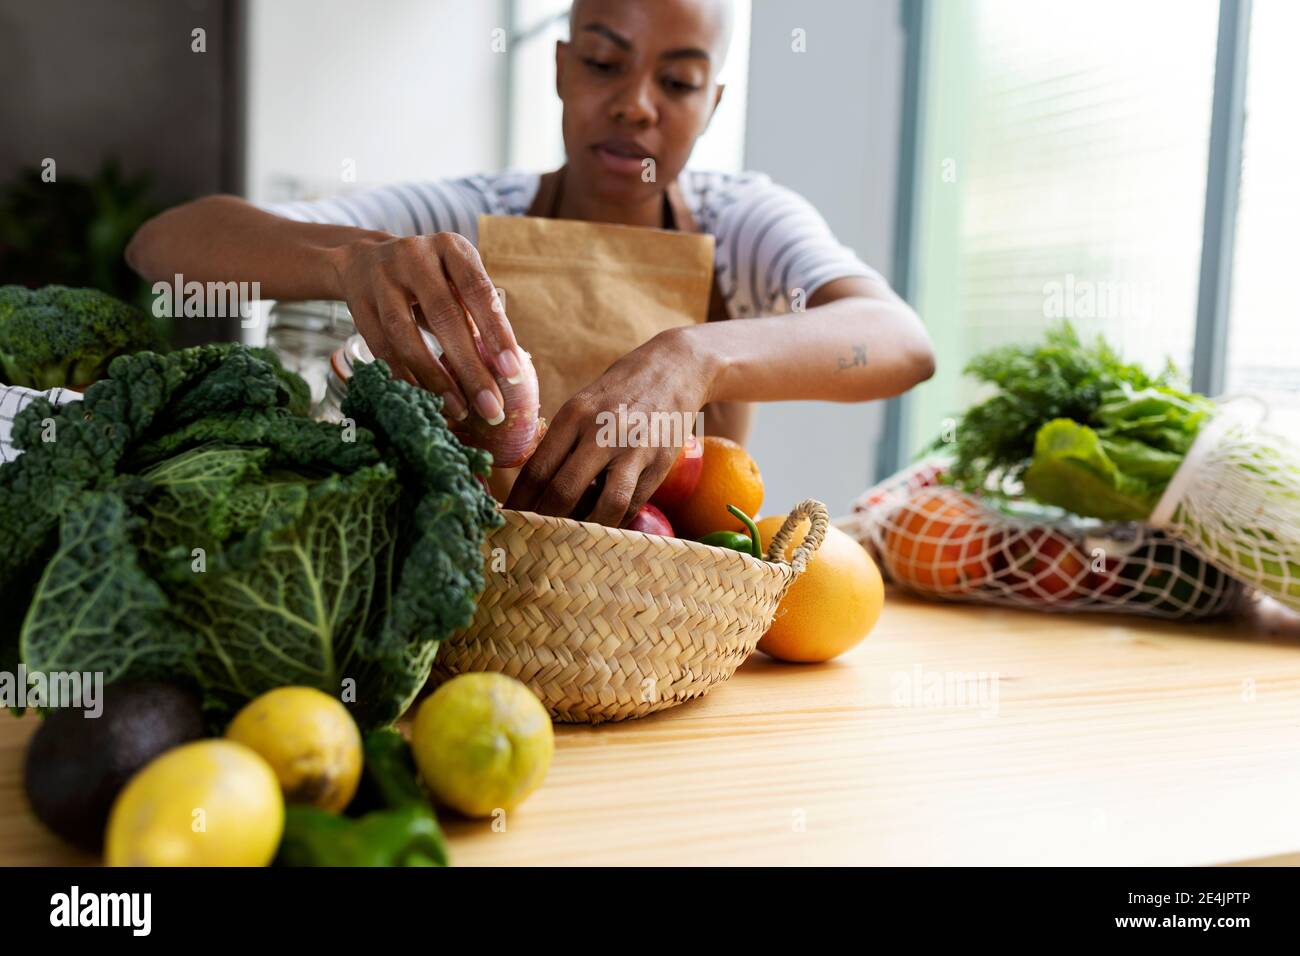 Frau mit Schürze in der Küche, Auspacken frisch gekauftes Bio-Obst und Gemüse Stockfoto